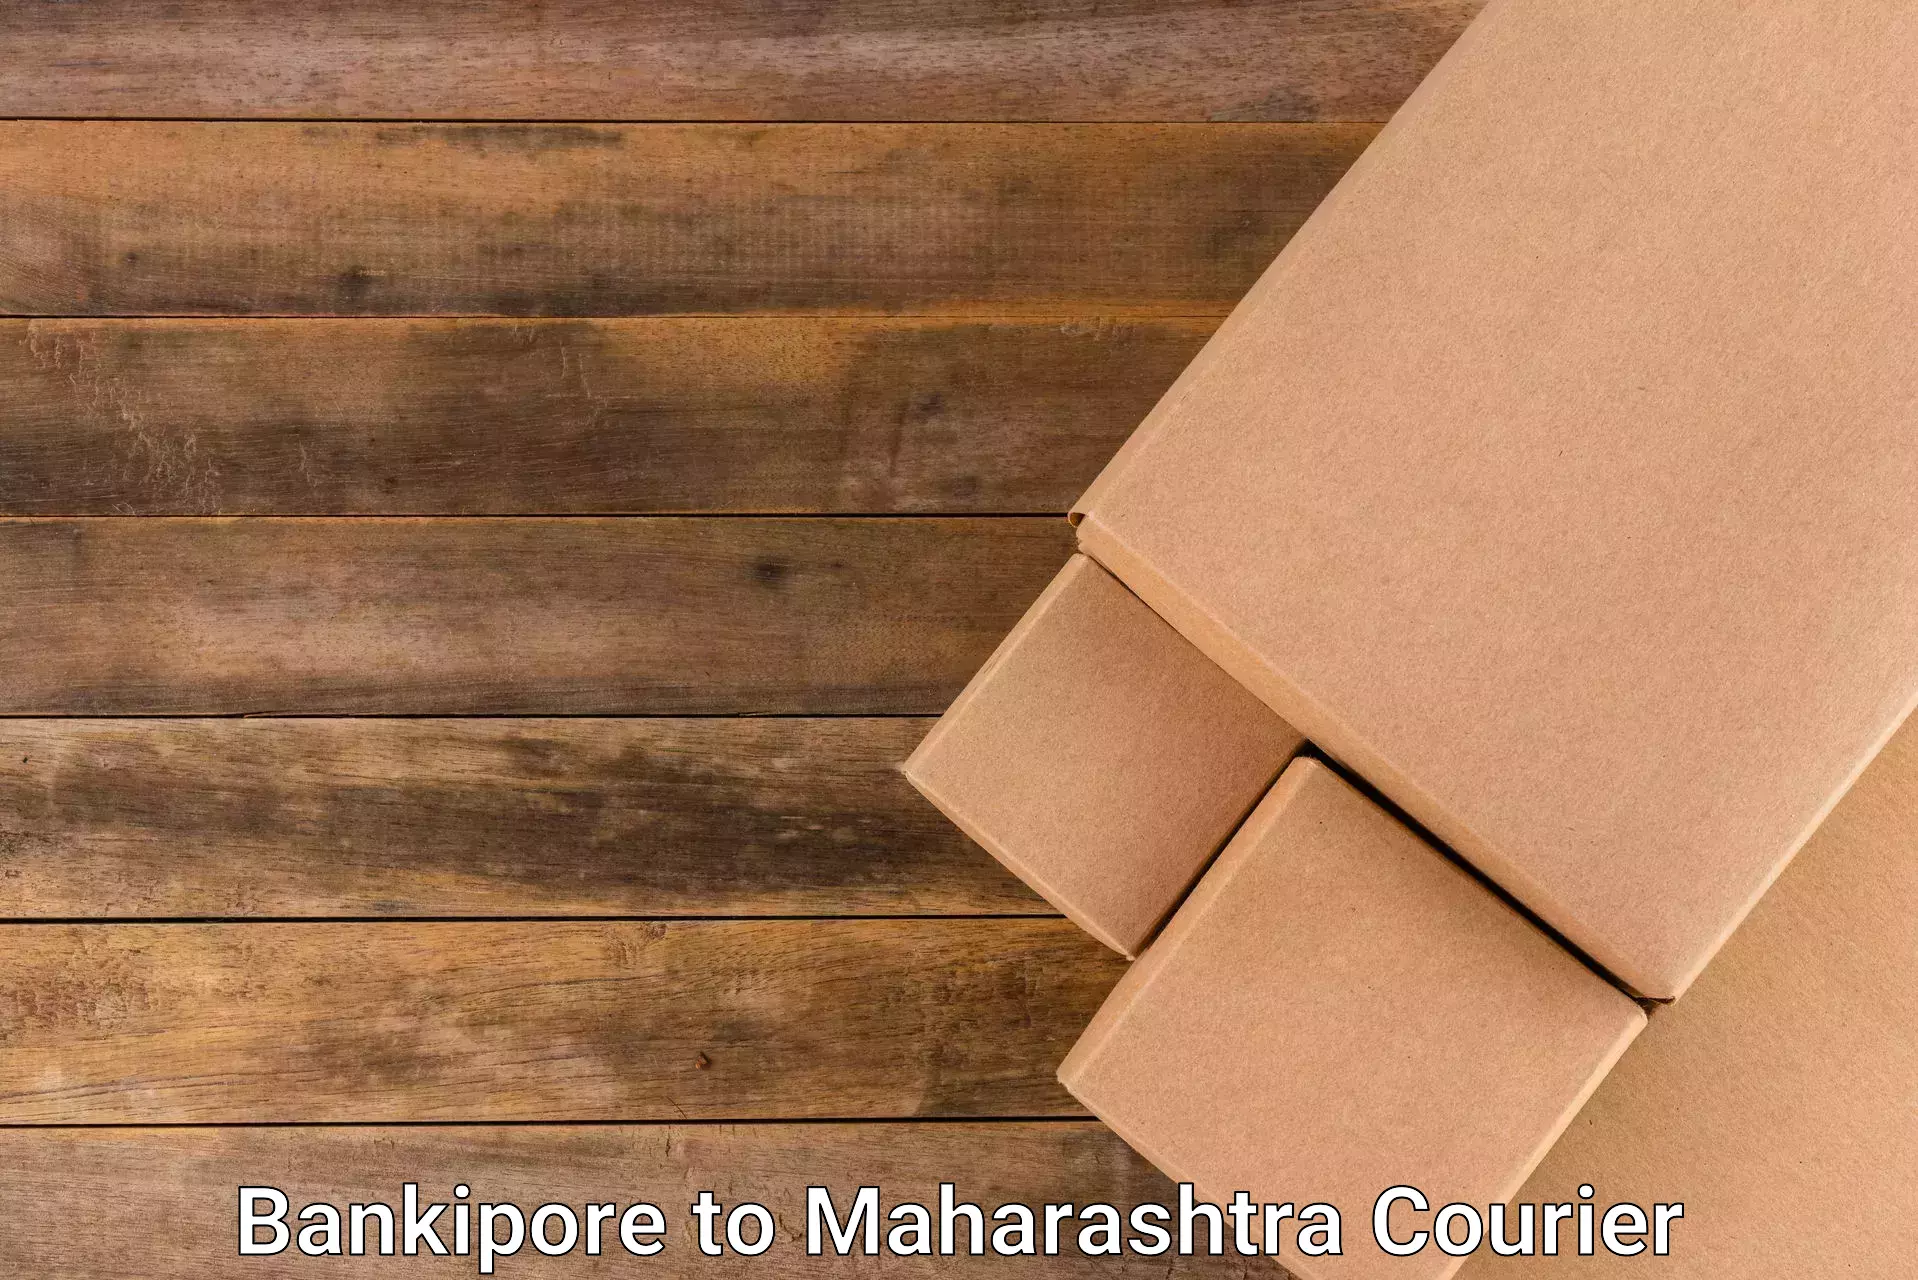 High-capacity parcel service Bankipore to Khopoli